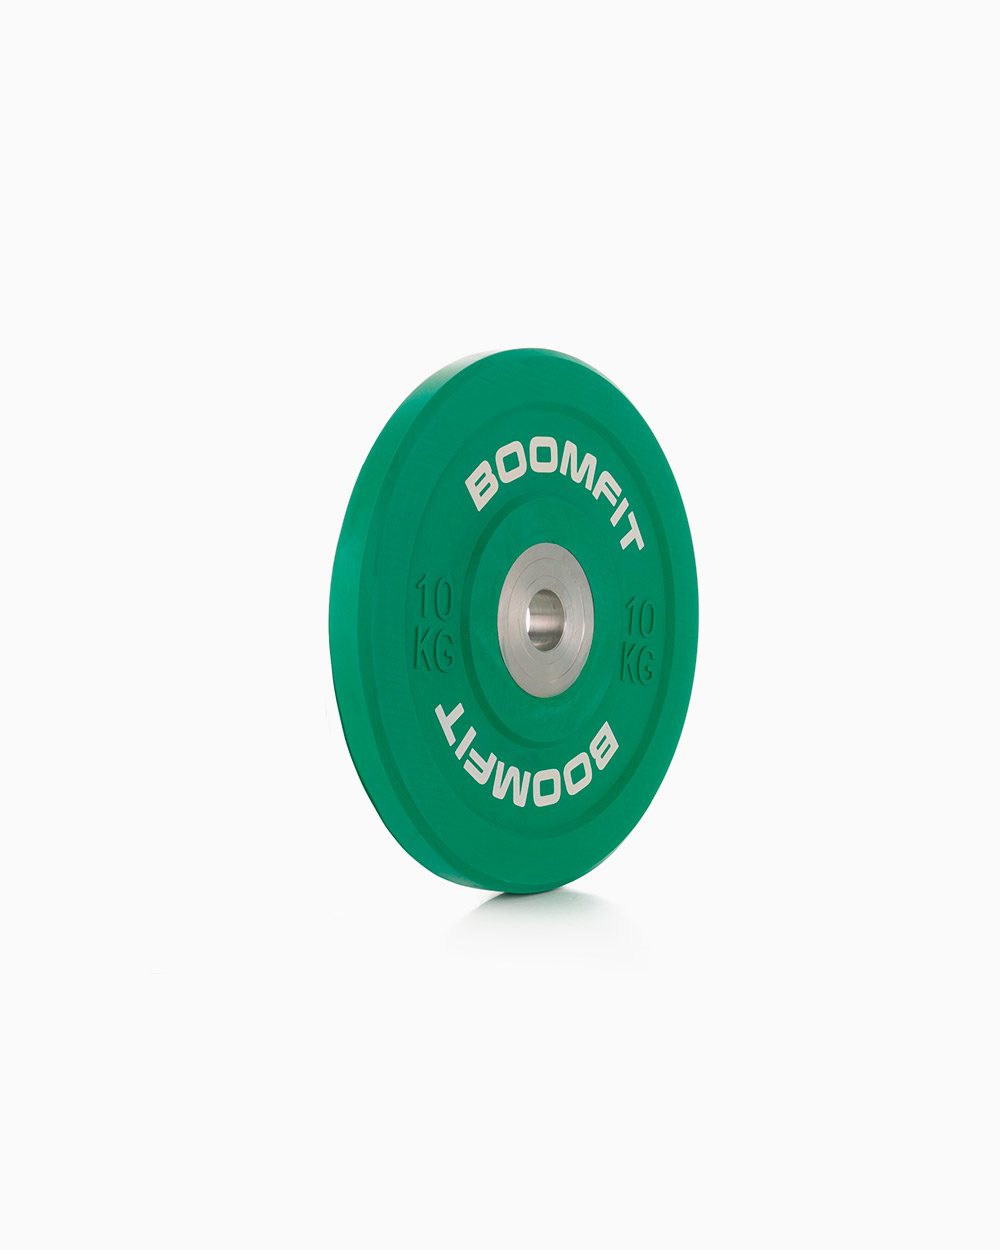 Disco De Competição 10kg - Boomfit - verde - 